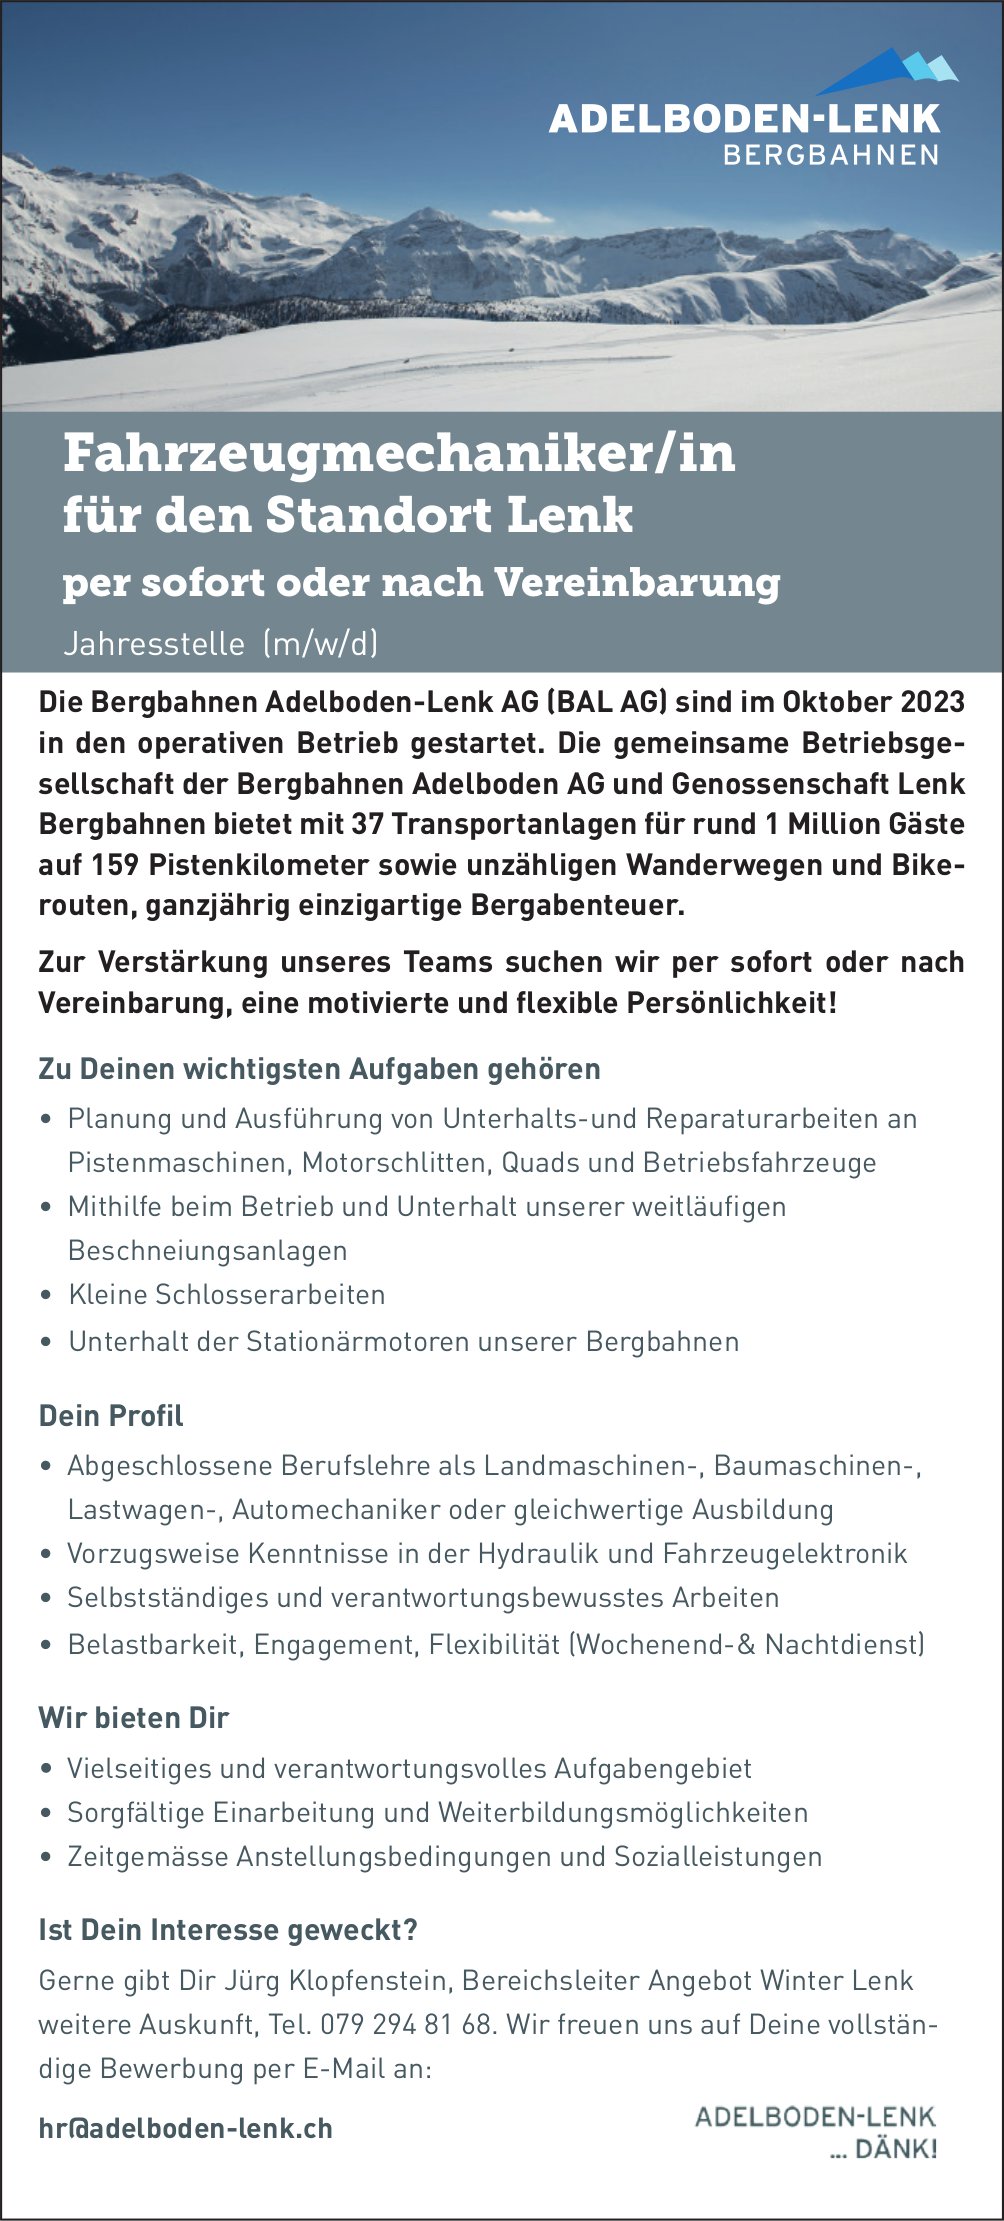 Fahrzeugmechaniker/in, Bergbahnen Adelboden-Lenk AG, gesucht